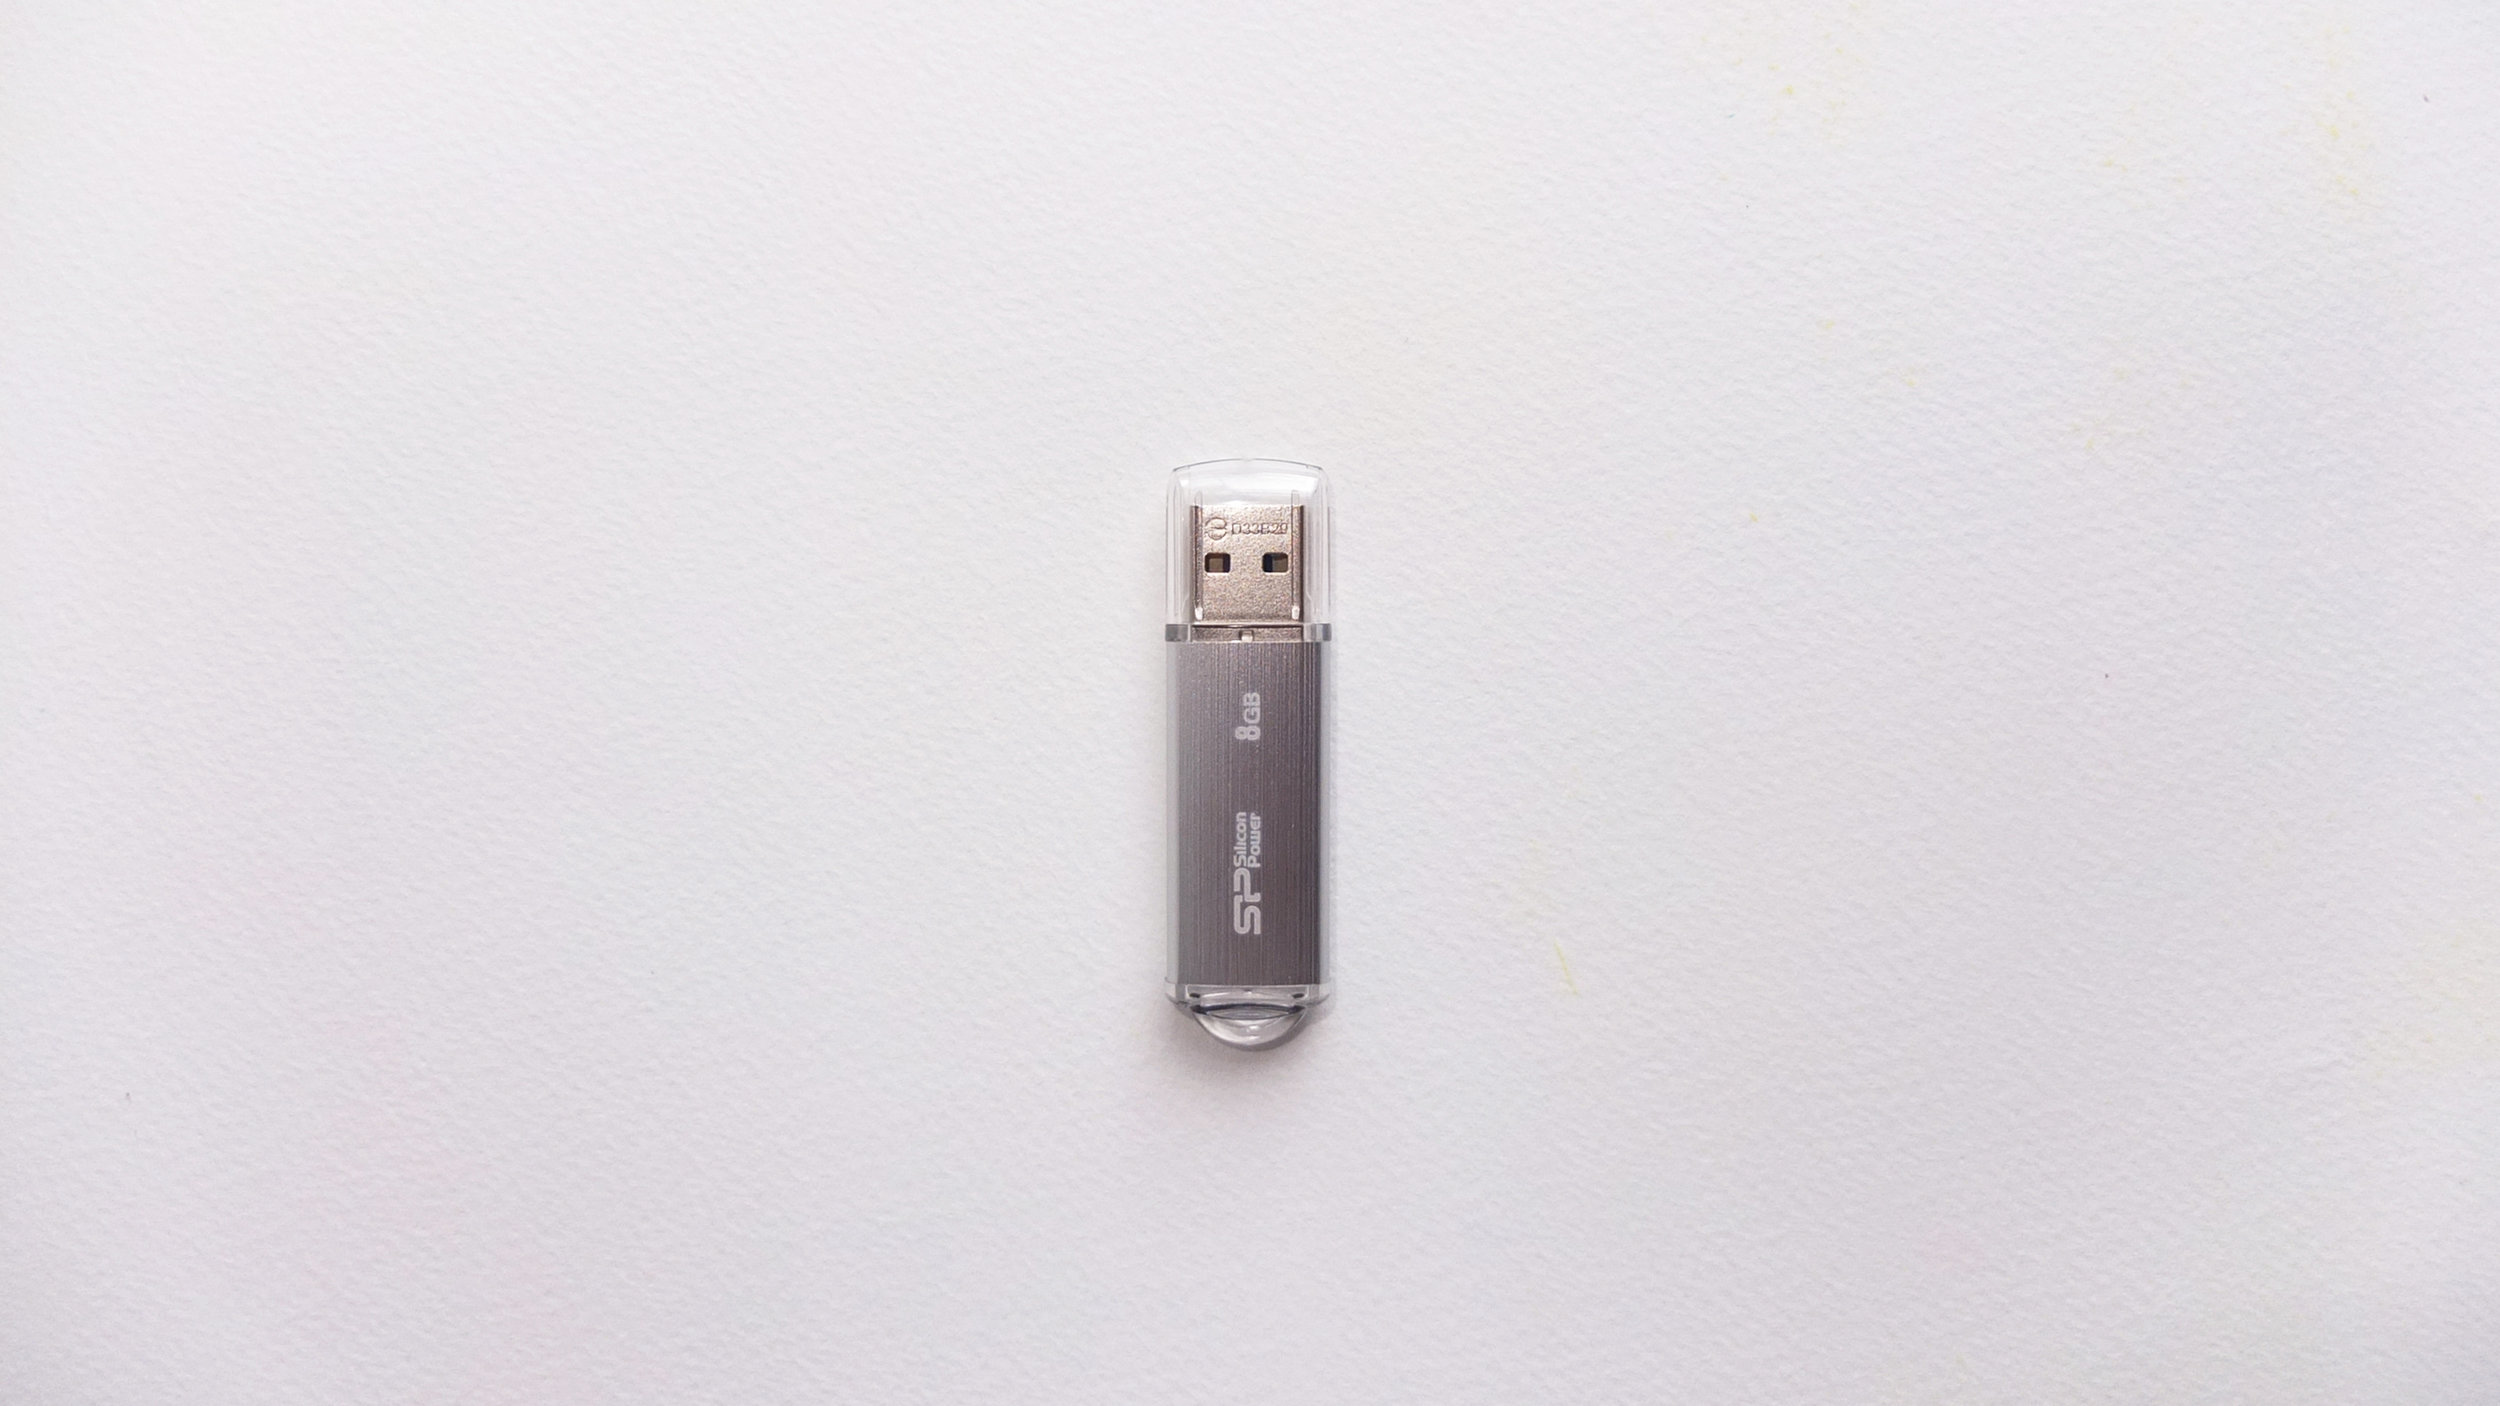 USB No. 25